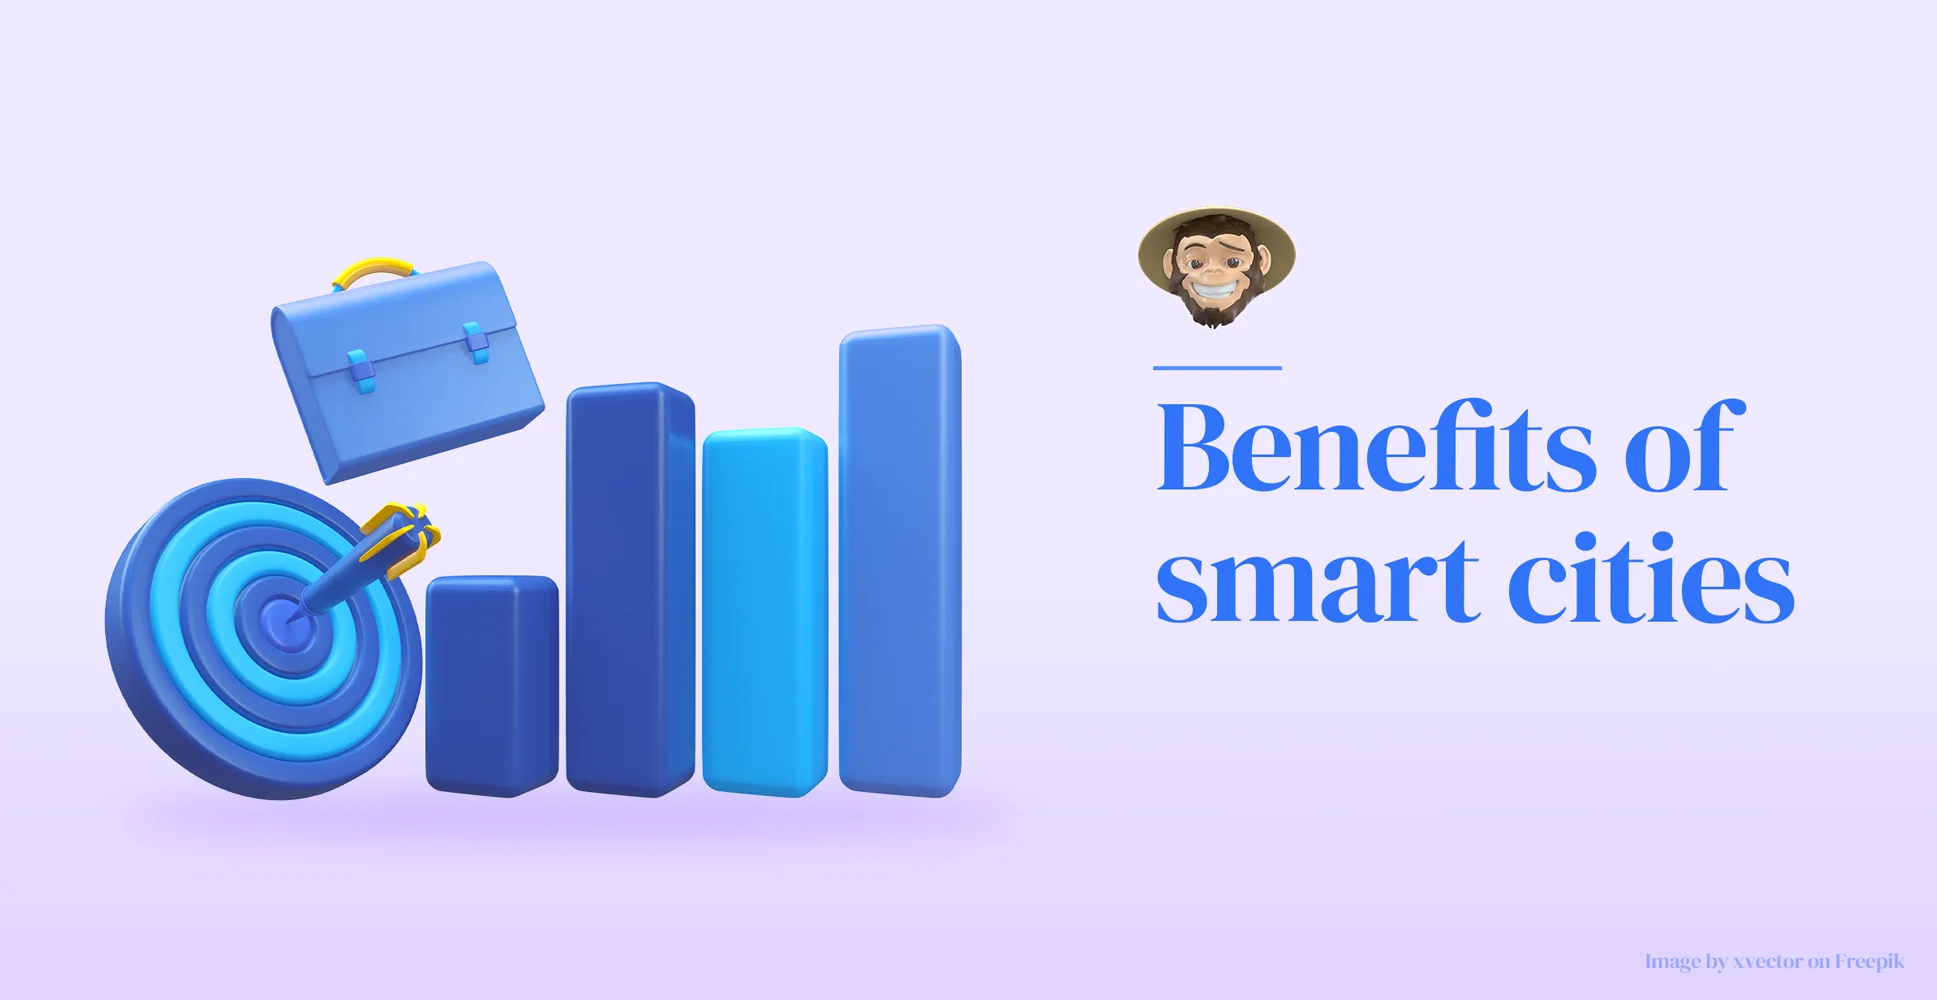 Benefits of smart cities